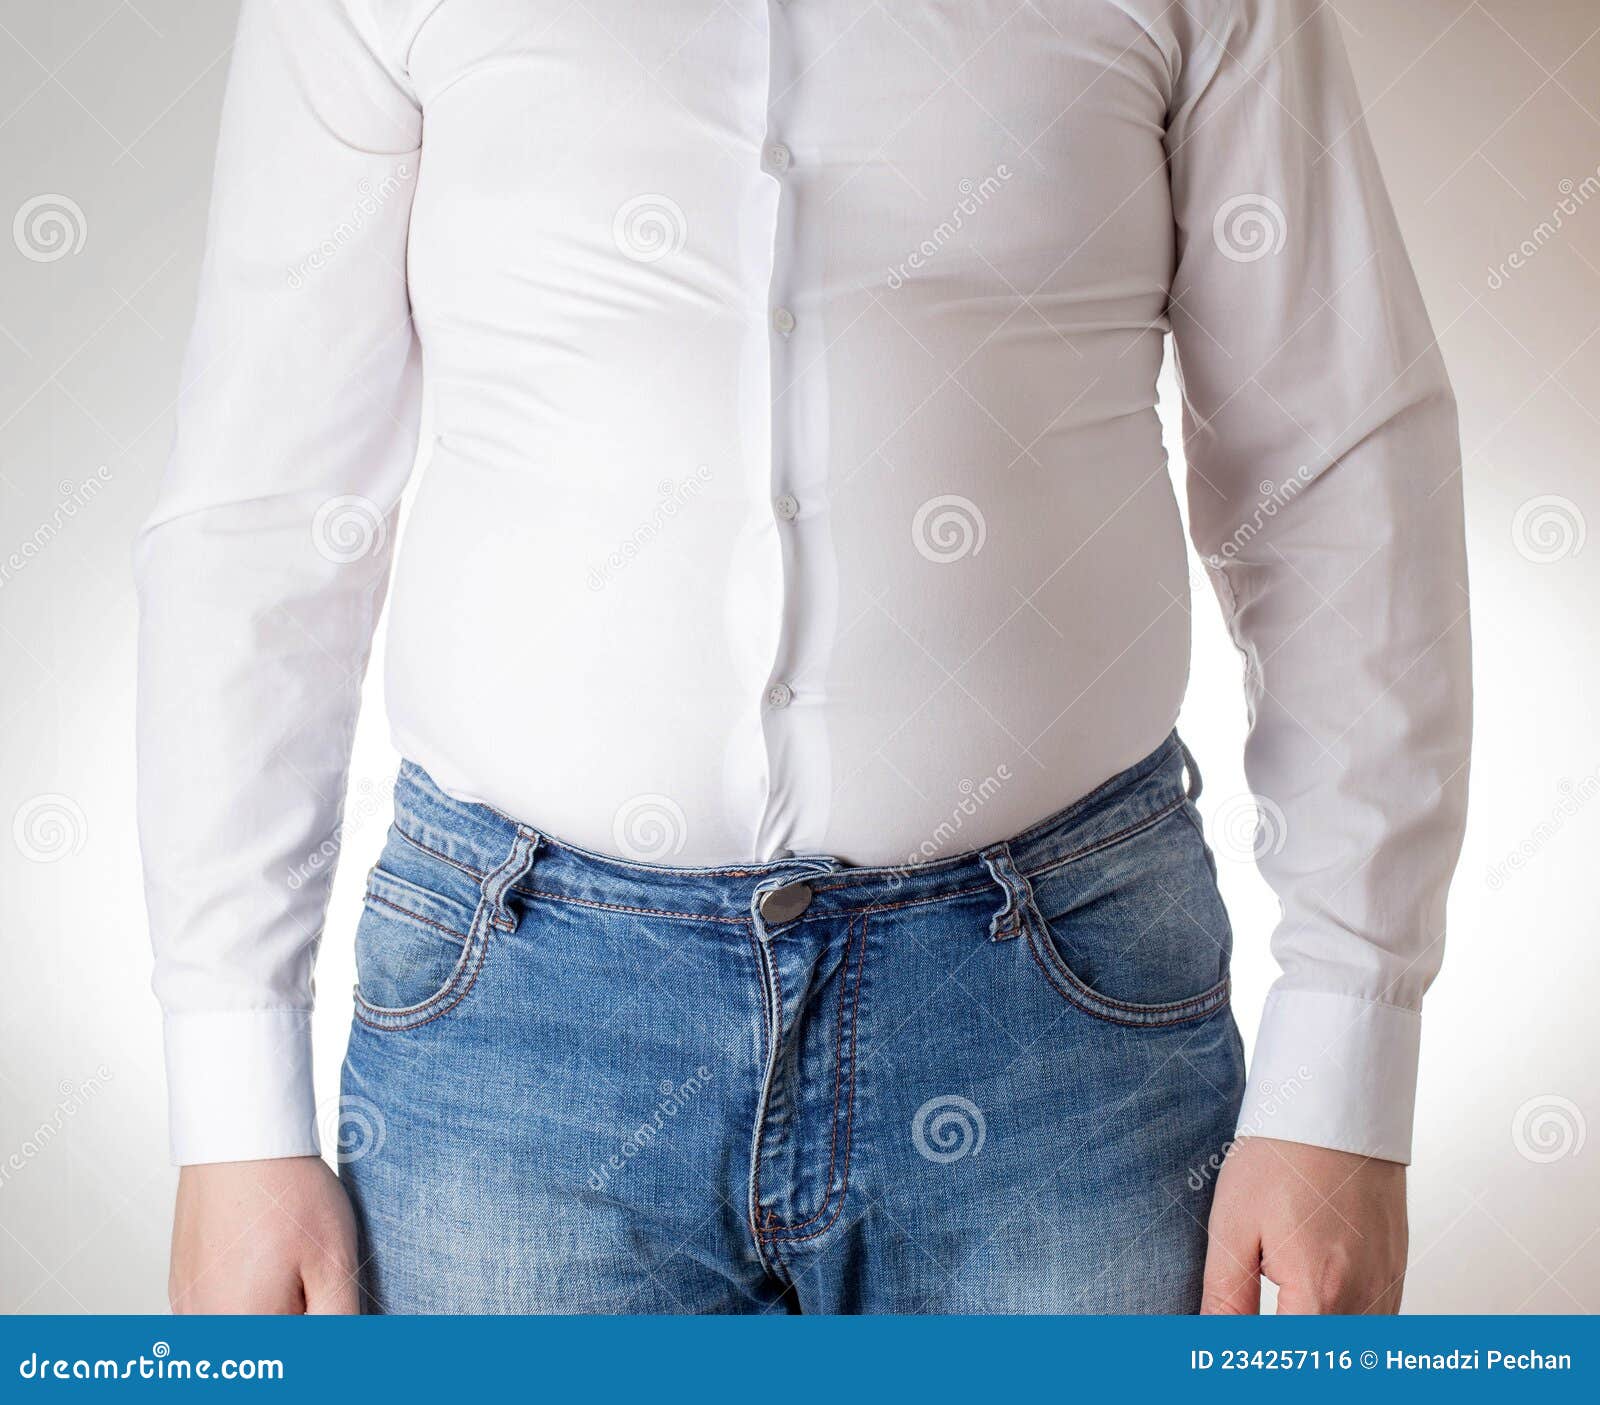 Un Hombre Gordo Con Una Camisa Blanca Ajustada. Incómodo Concepto De Vestimenta Obesidad. Resbalamiento Foto de archivo - gordo: 234257116